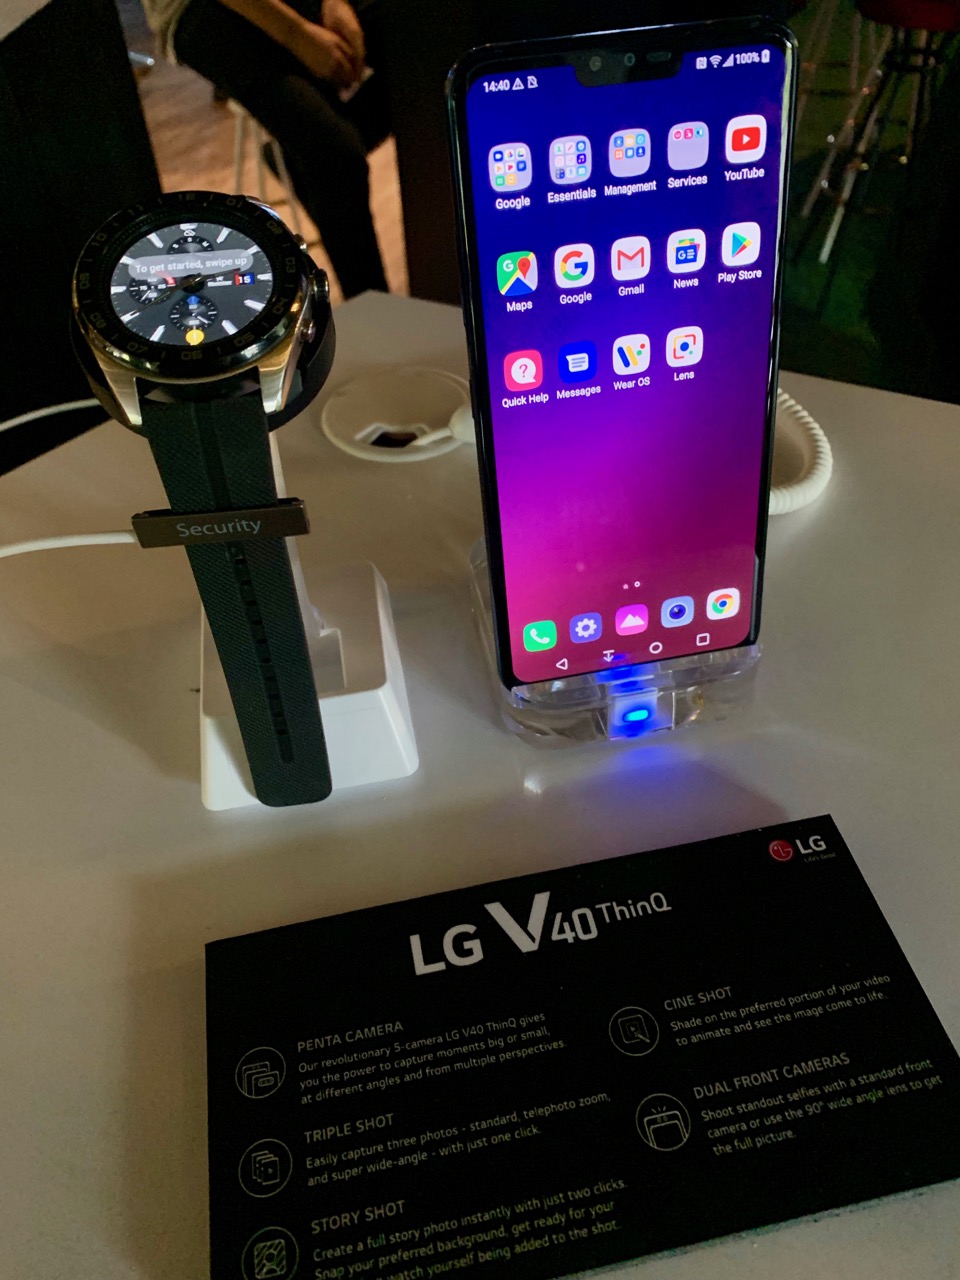 LG unveiled LG V40 ThinQ smartphone